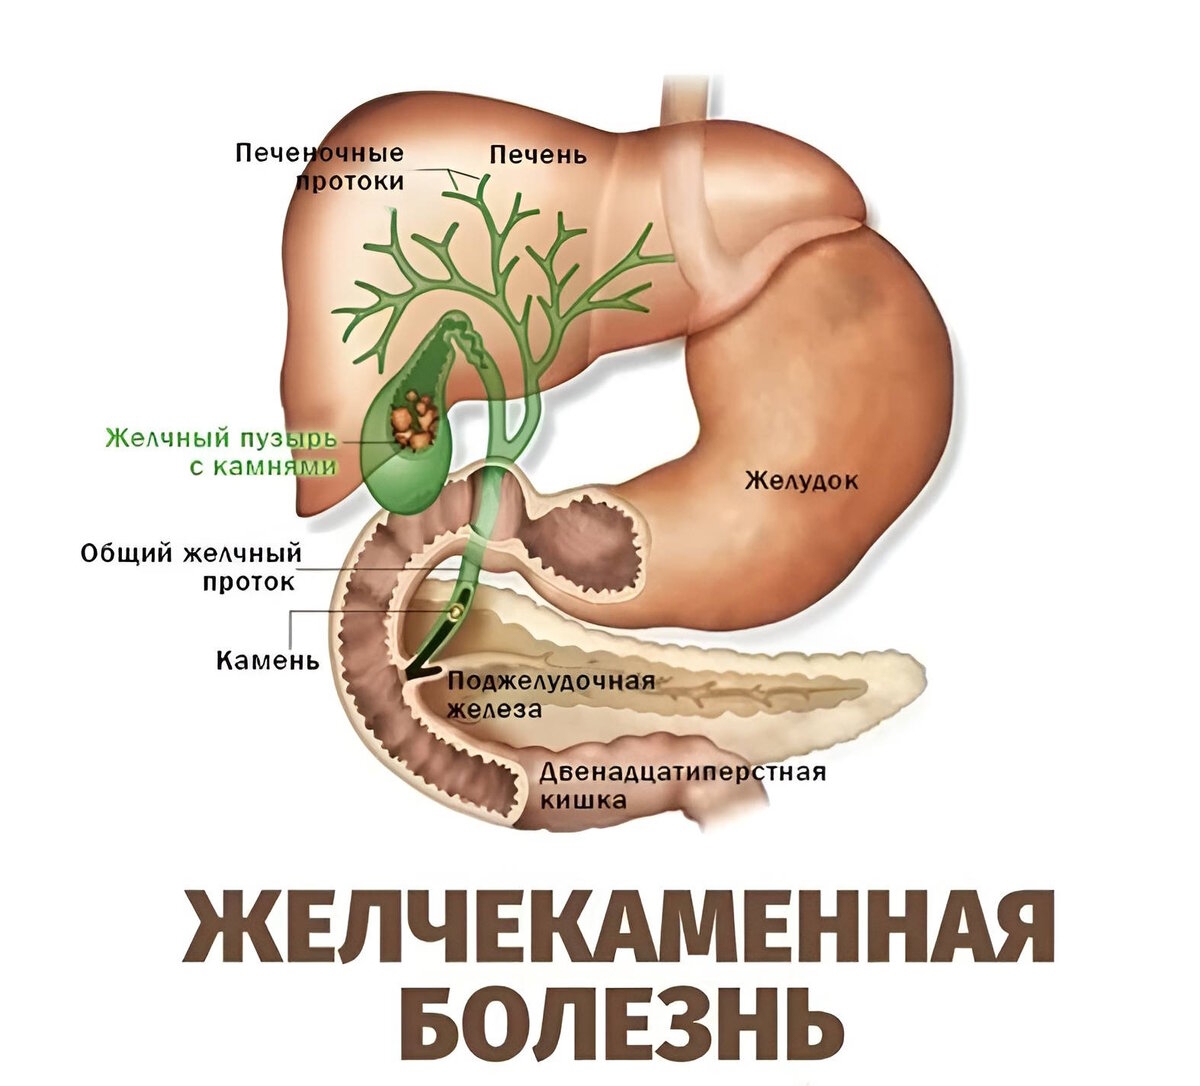 Анатомия ЖКТ желчный пузырь. Желчный пузырь и желчные протоки анатомия. Камни поджелудочной железы ЖКБ. Желчекаменная болезнь анатомия. Печень без желчного